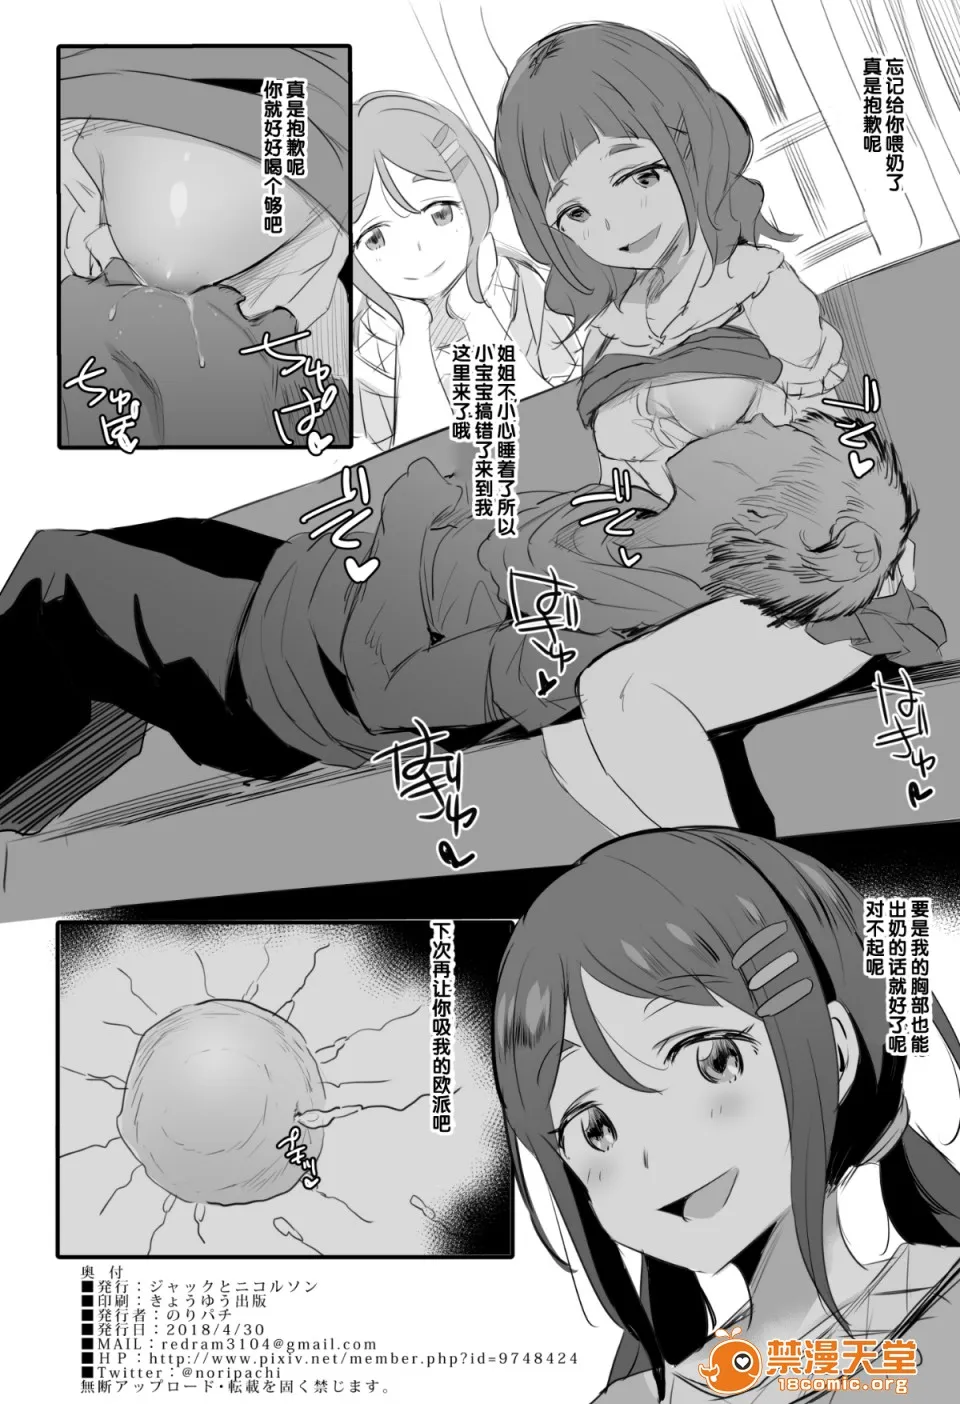 日本漫画大全全彩汉化之(COMIC1☆13)ブレンドS母乳部おまけ(ブレンド・S)